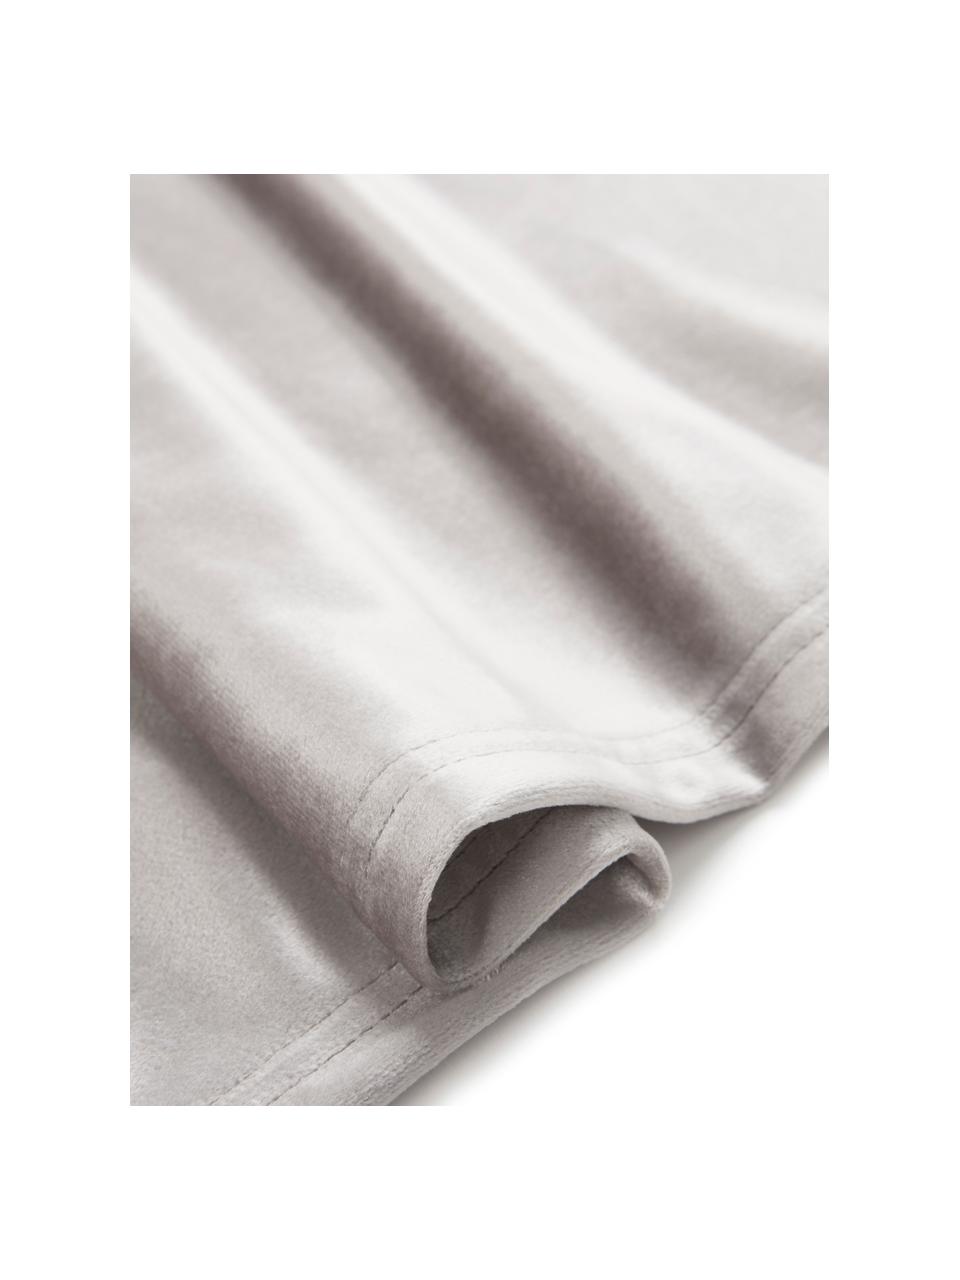 Fluwelen tafelloper Simone in grijs, 100% polyester fluweel, Grijs, B 40 x L 140 cm